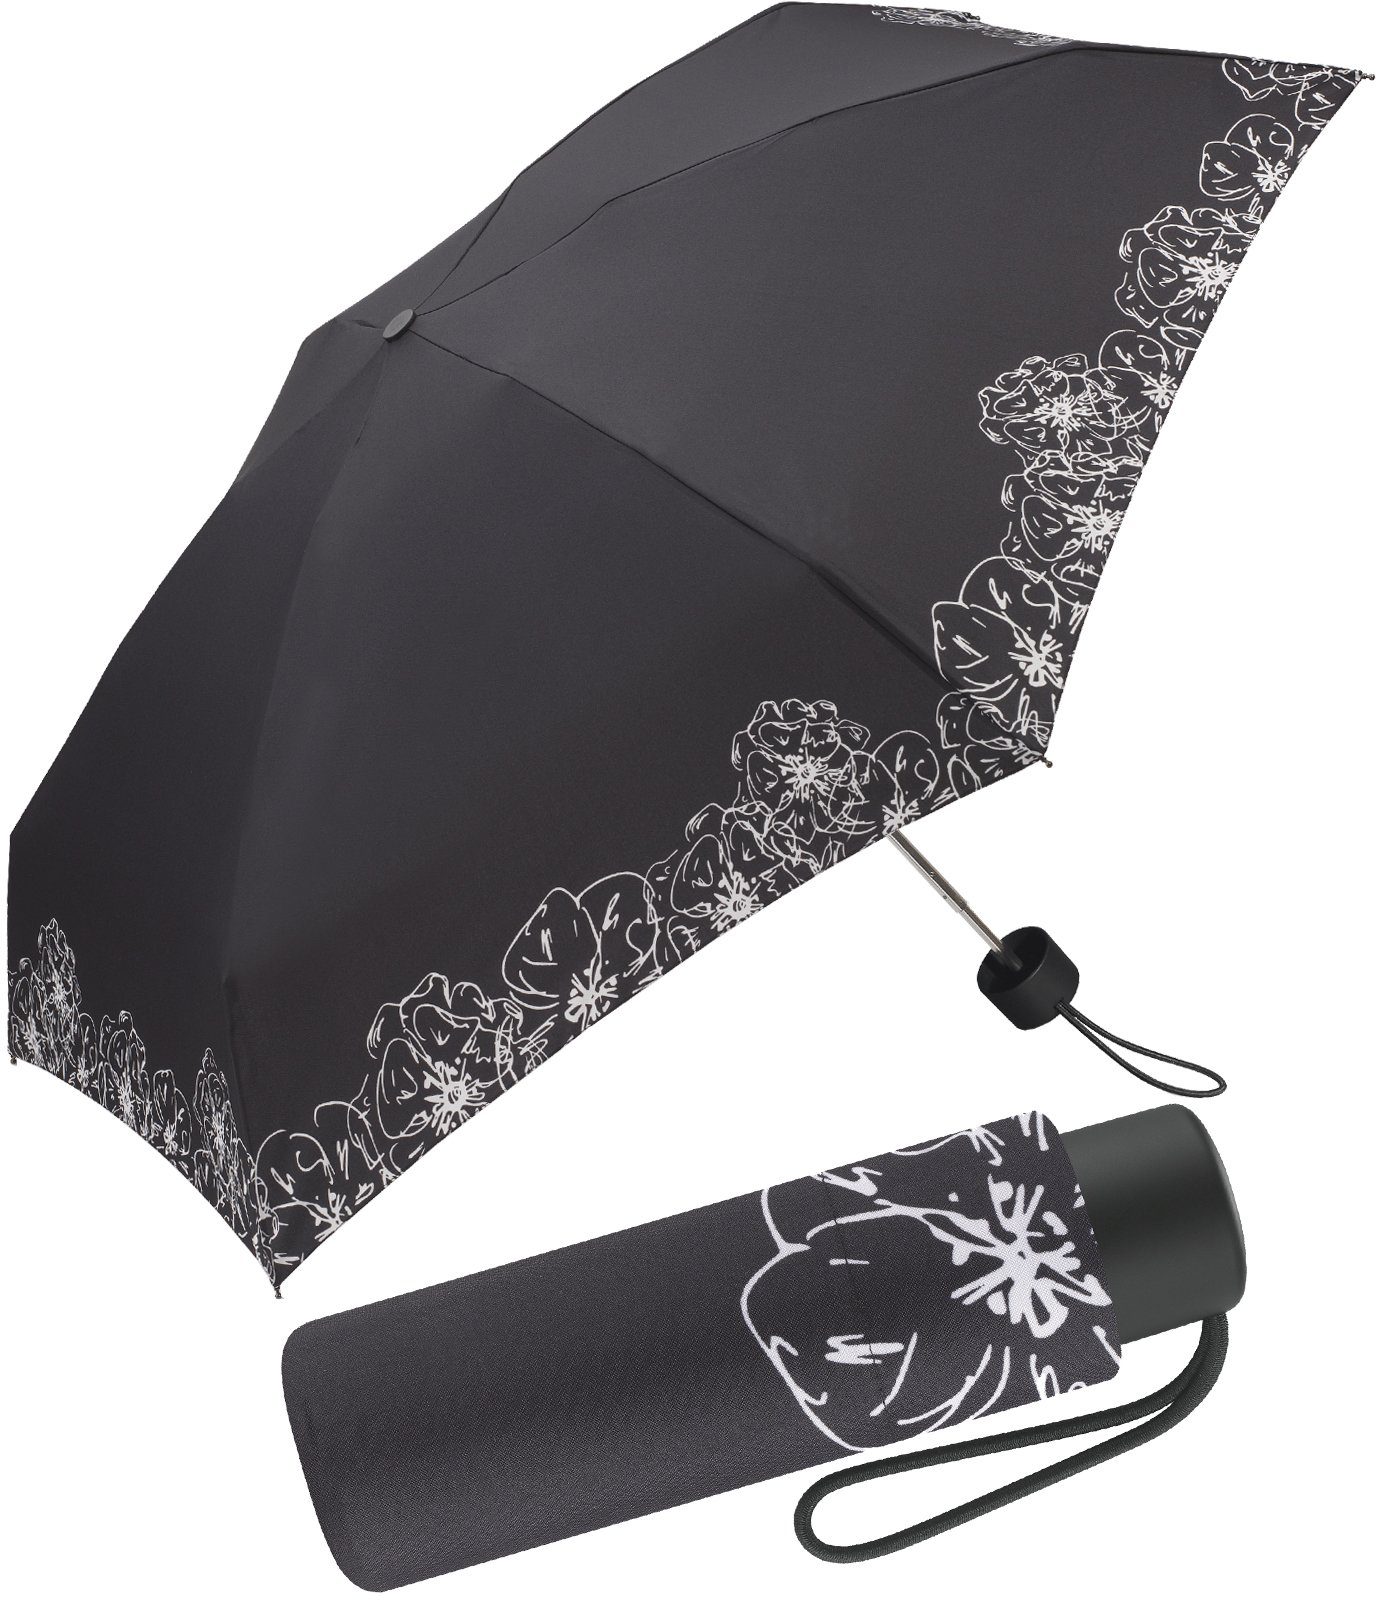 Pierre Cardin Taschenregenschirm Petito Black & White Flower Border, elegant und stilvoll